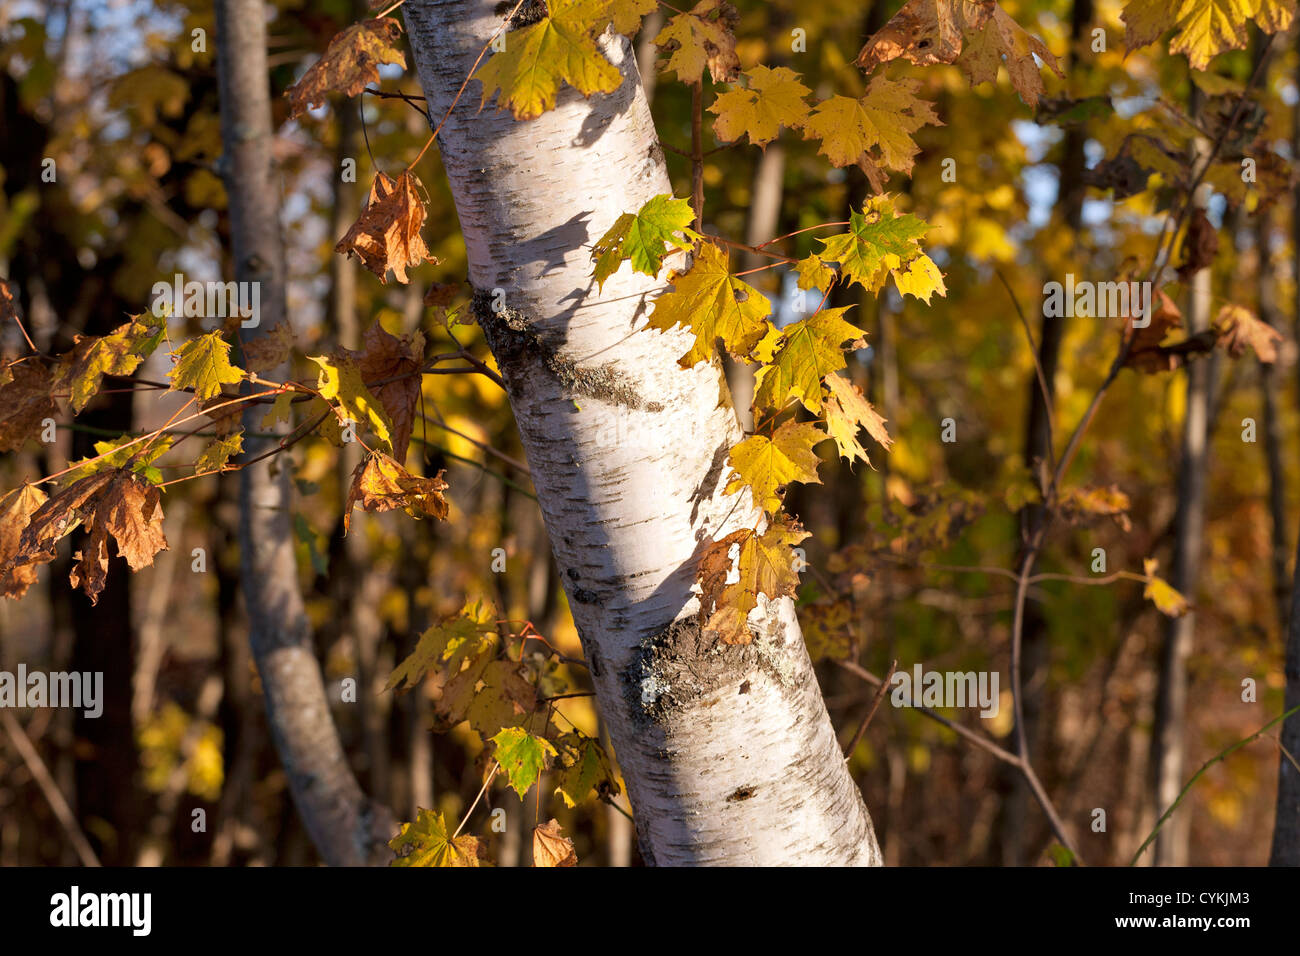 Bouleau blanc d'un tronc d'arbre dans une forêt avec des feuilles d'automne jaune. Banque D'Images